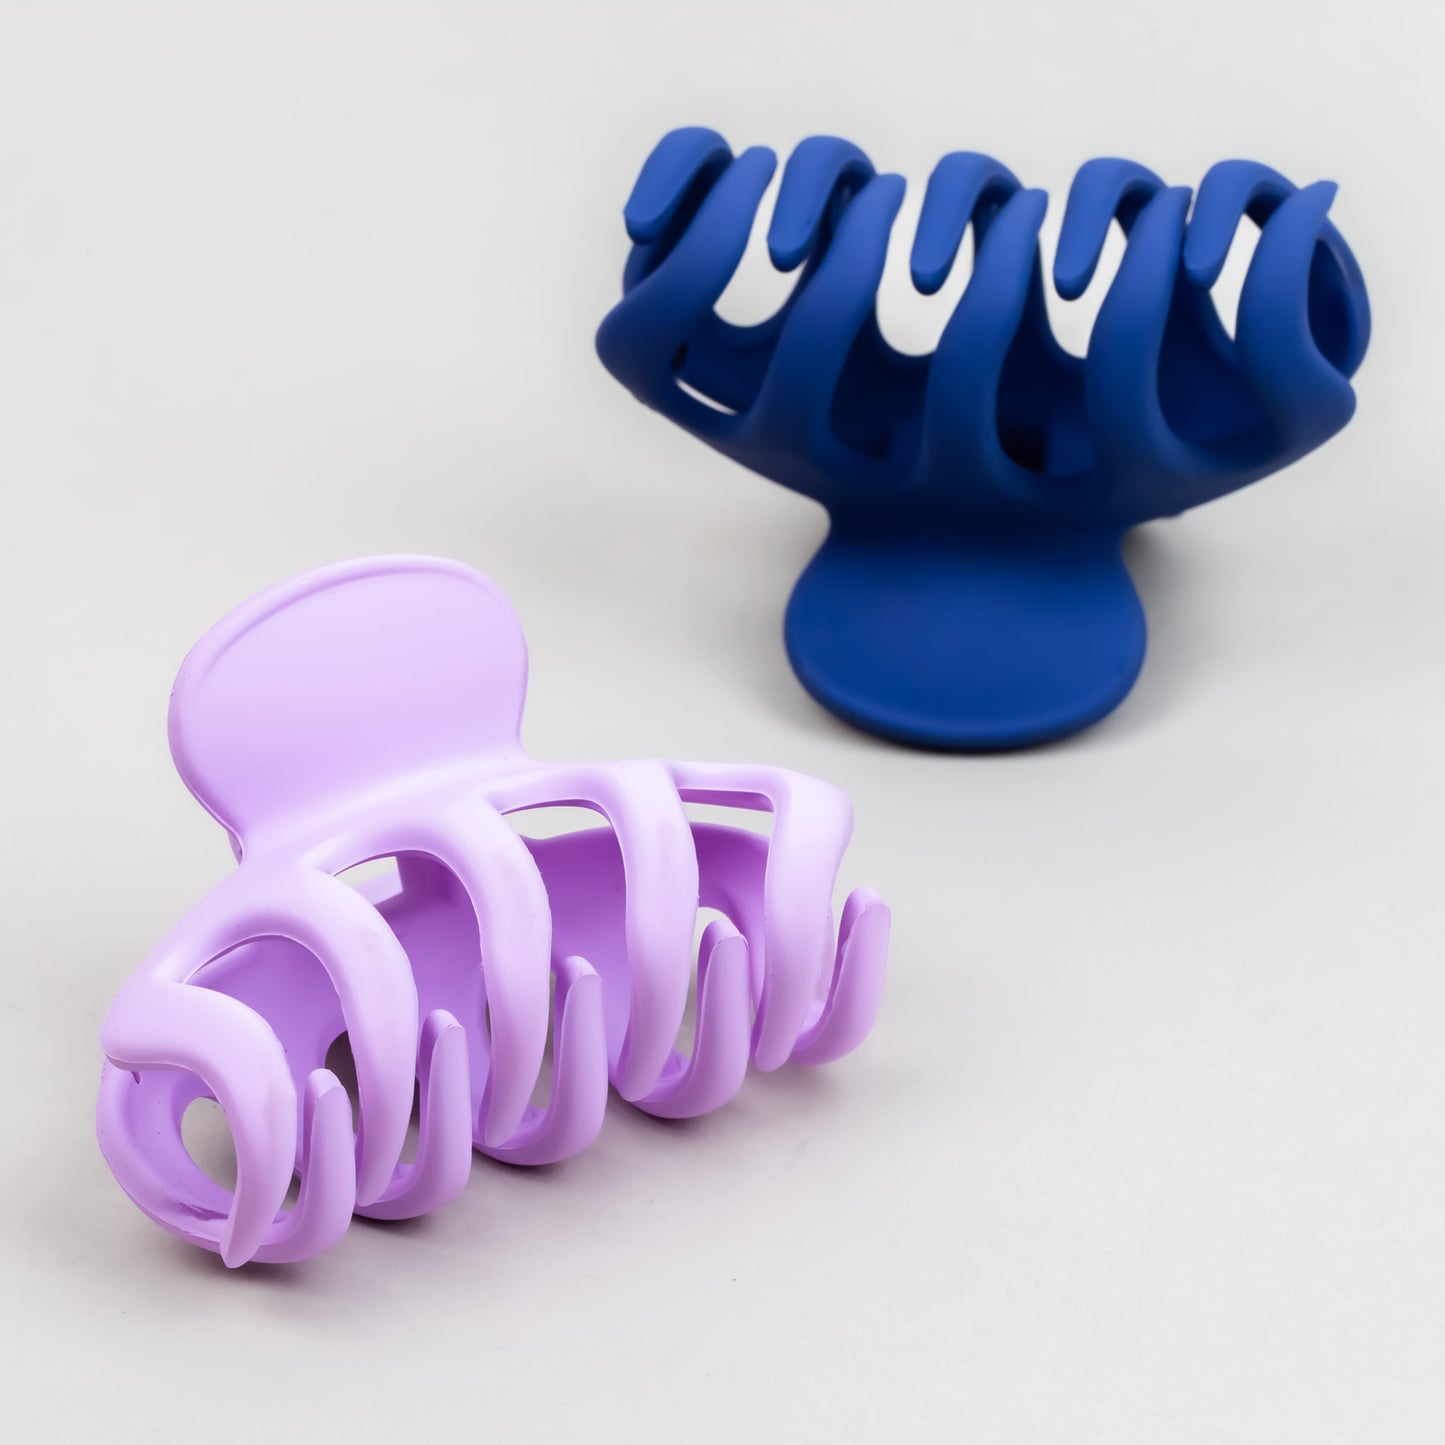 Clame de păr medii tip octopus cu textură de silicon, set 2 buc - Lavander Mix